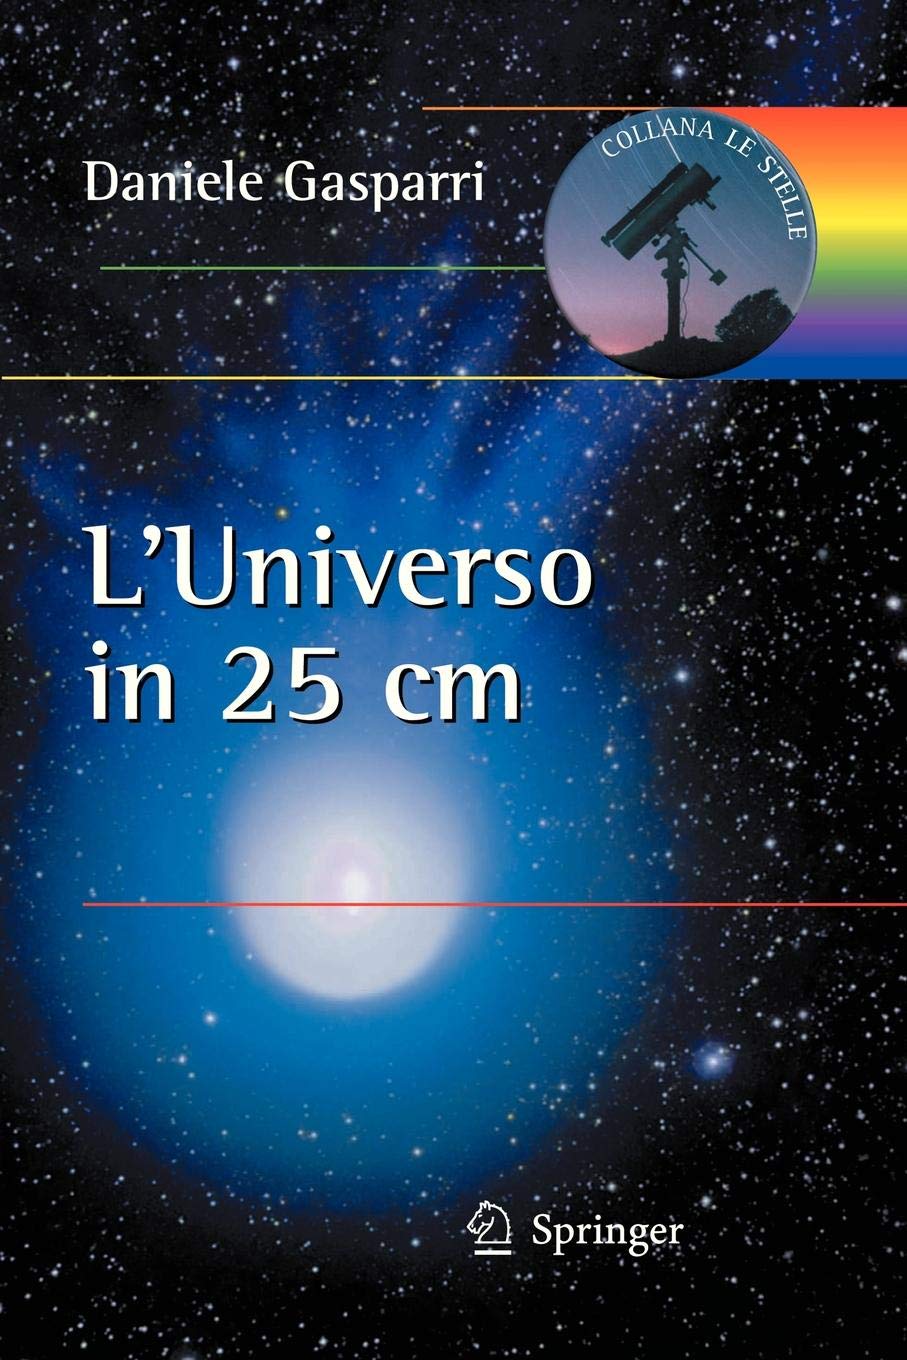 
L'universo in 25 cm
